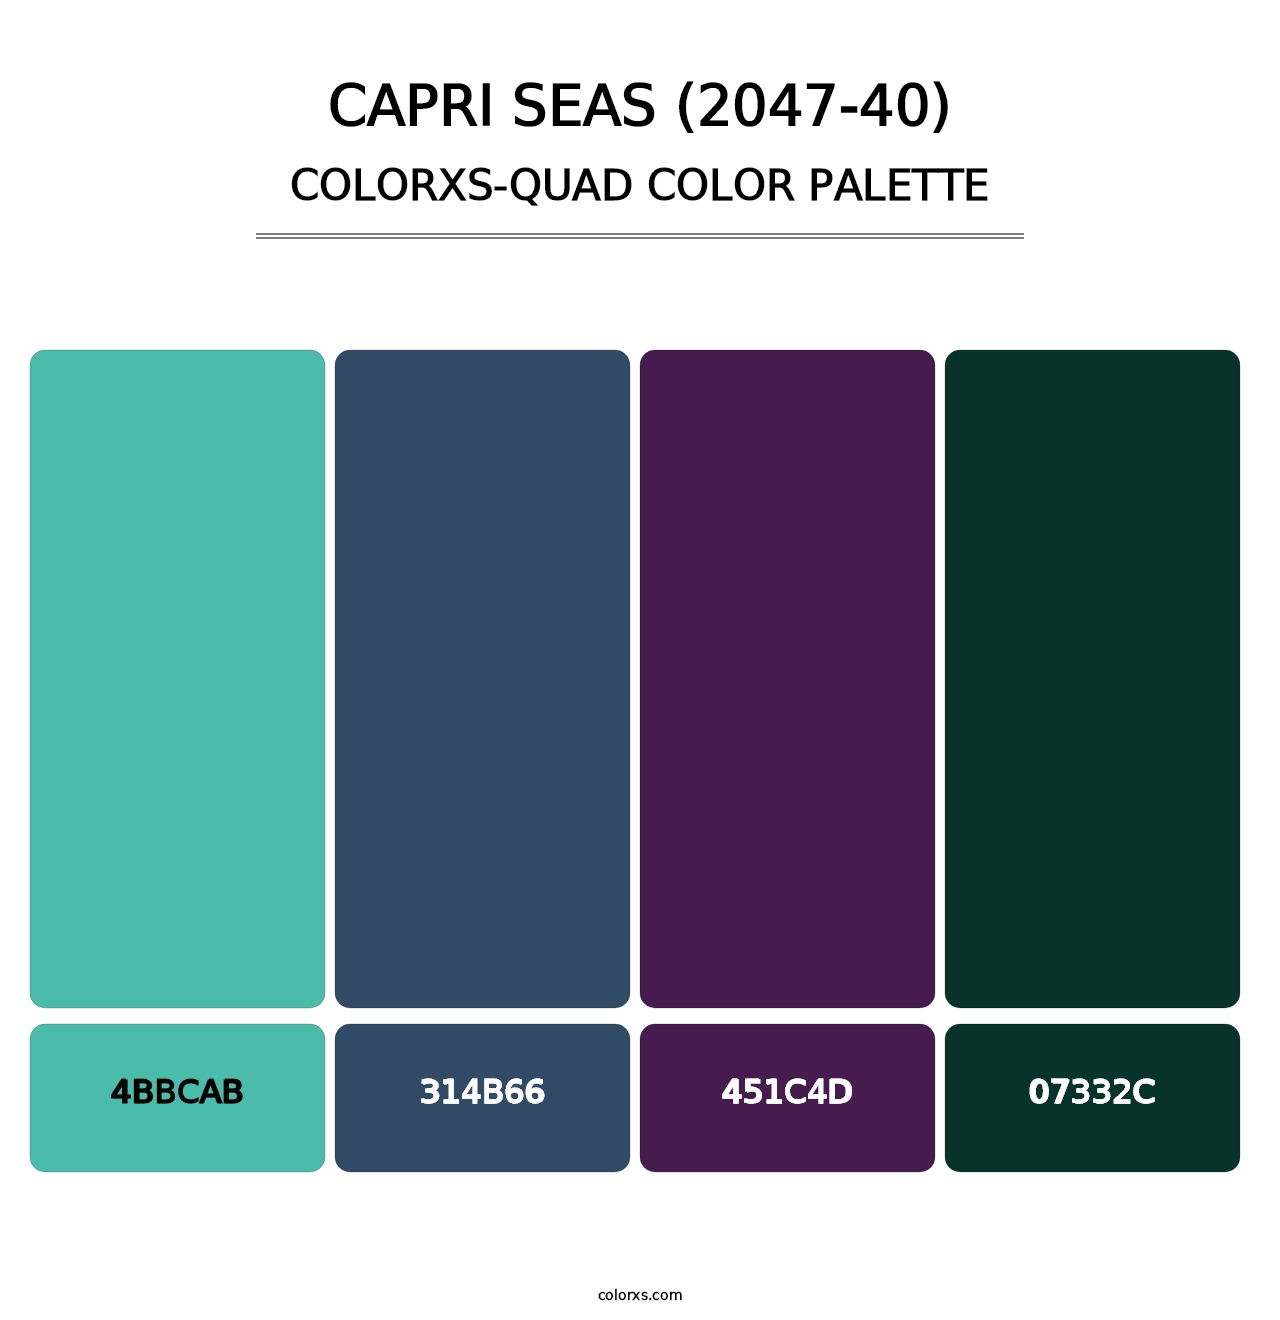 Capri Seas (2047-40) - Colorxs Quad Palette